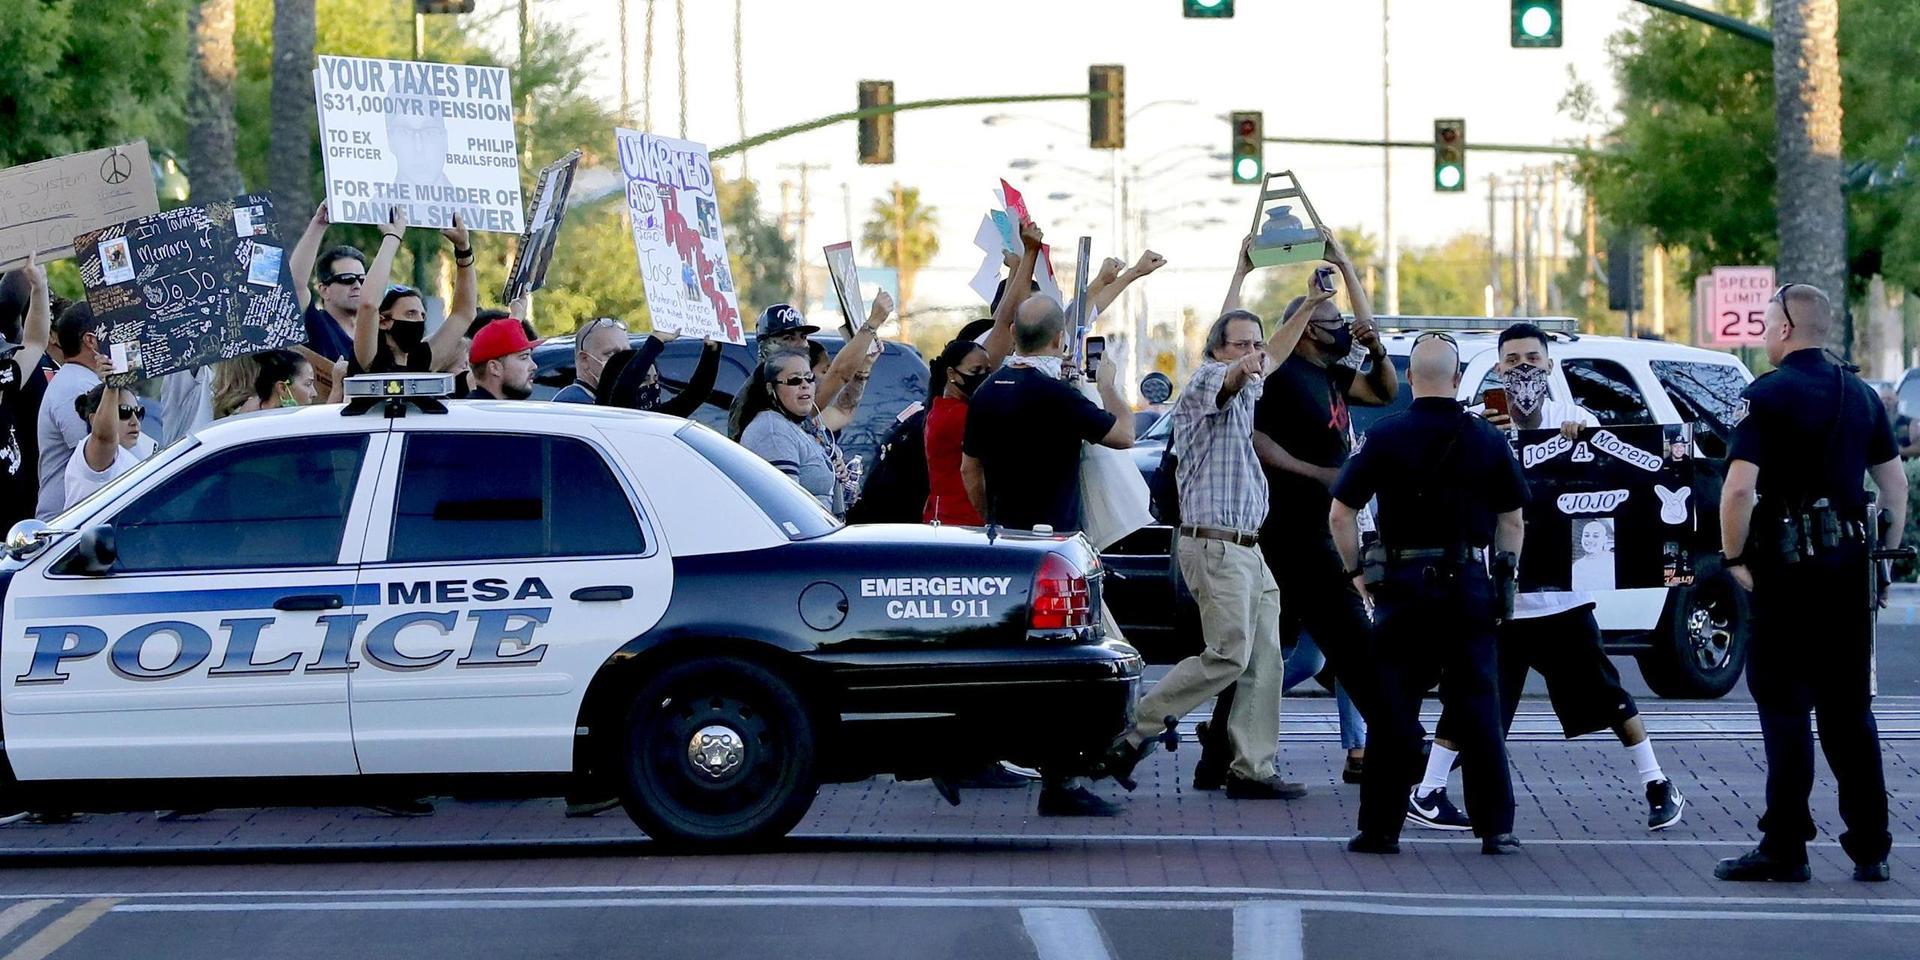 Det amerikanska tv-programmet ”Cops” läggs ner efter de stora protesterna i USA som följt efter George Floyds död.